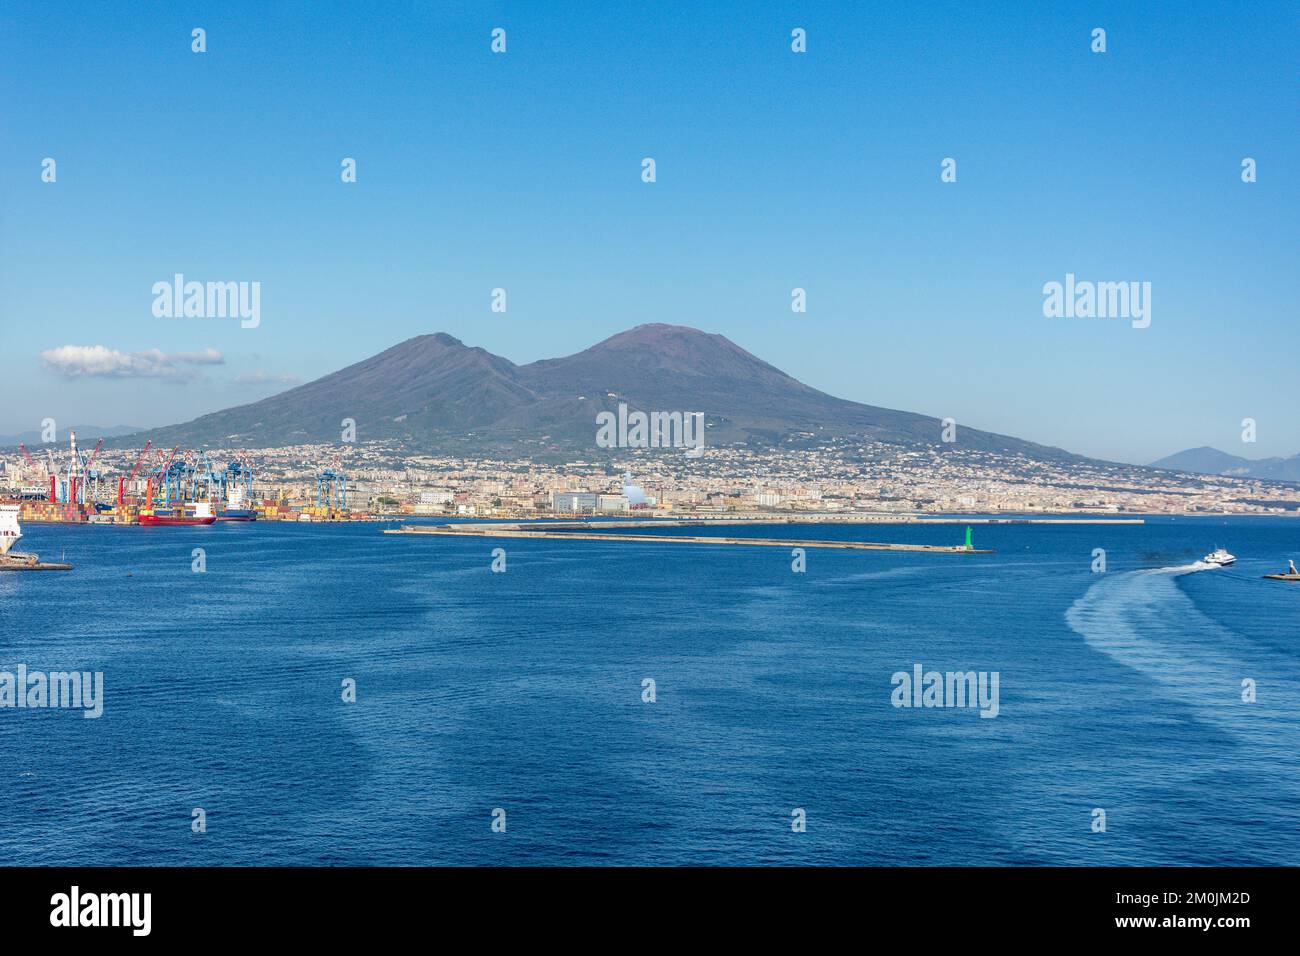 Monte Vesubio desde la bahía de Nápoles, ciudad de Nápoles (Nápoles), región de Campania, Italia Foto de stock